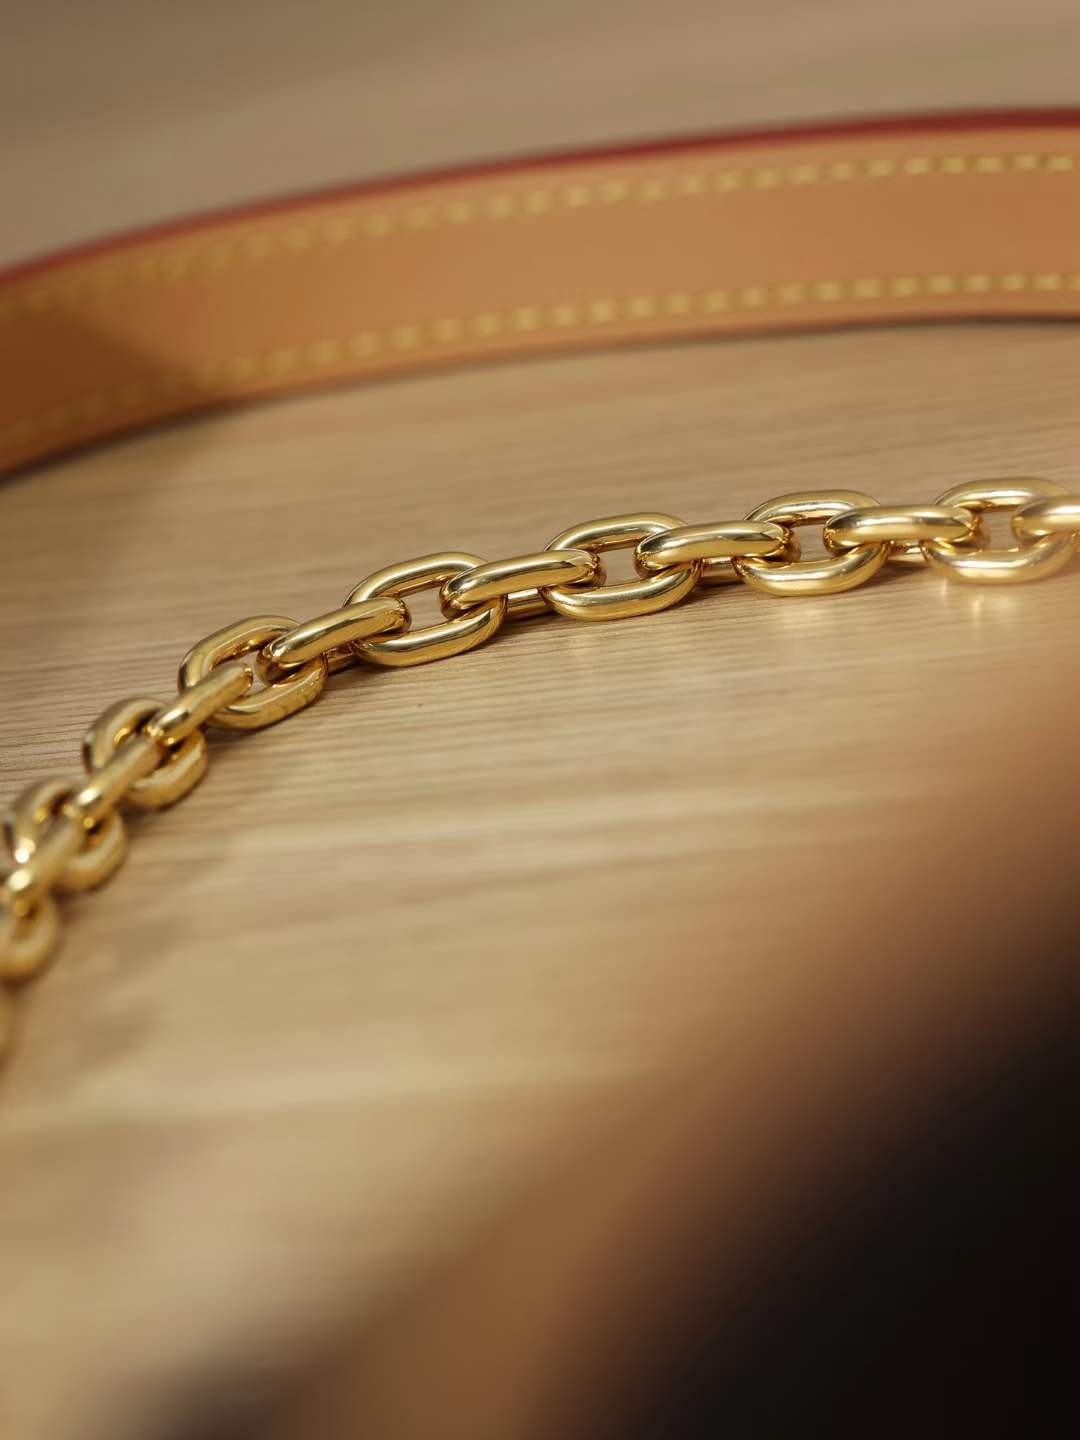 Louis Vuitton M45832 Boulogne augstākās kvalitātes reprodukcijas somas (atjaunināts 2022. gadā) — labākās kvalitātes viltotās Louis Vuitton somas tiešsaistes veikals, dizaineru somas kopija ru